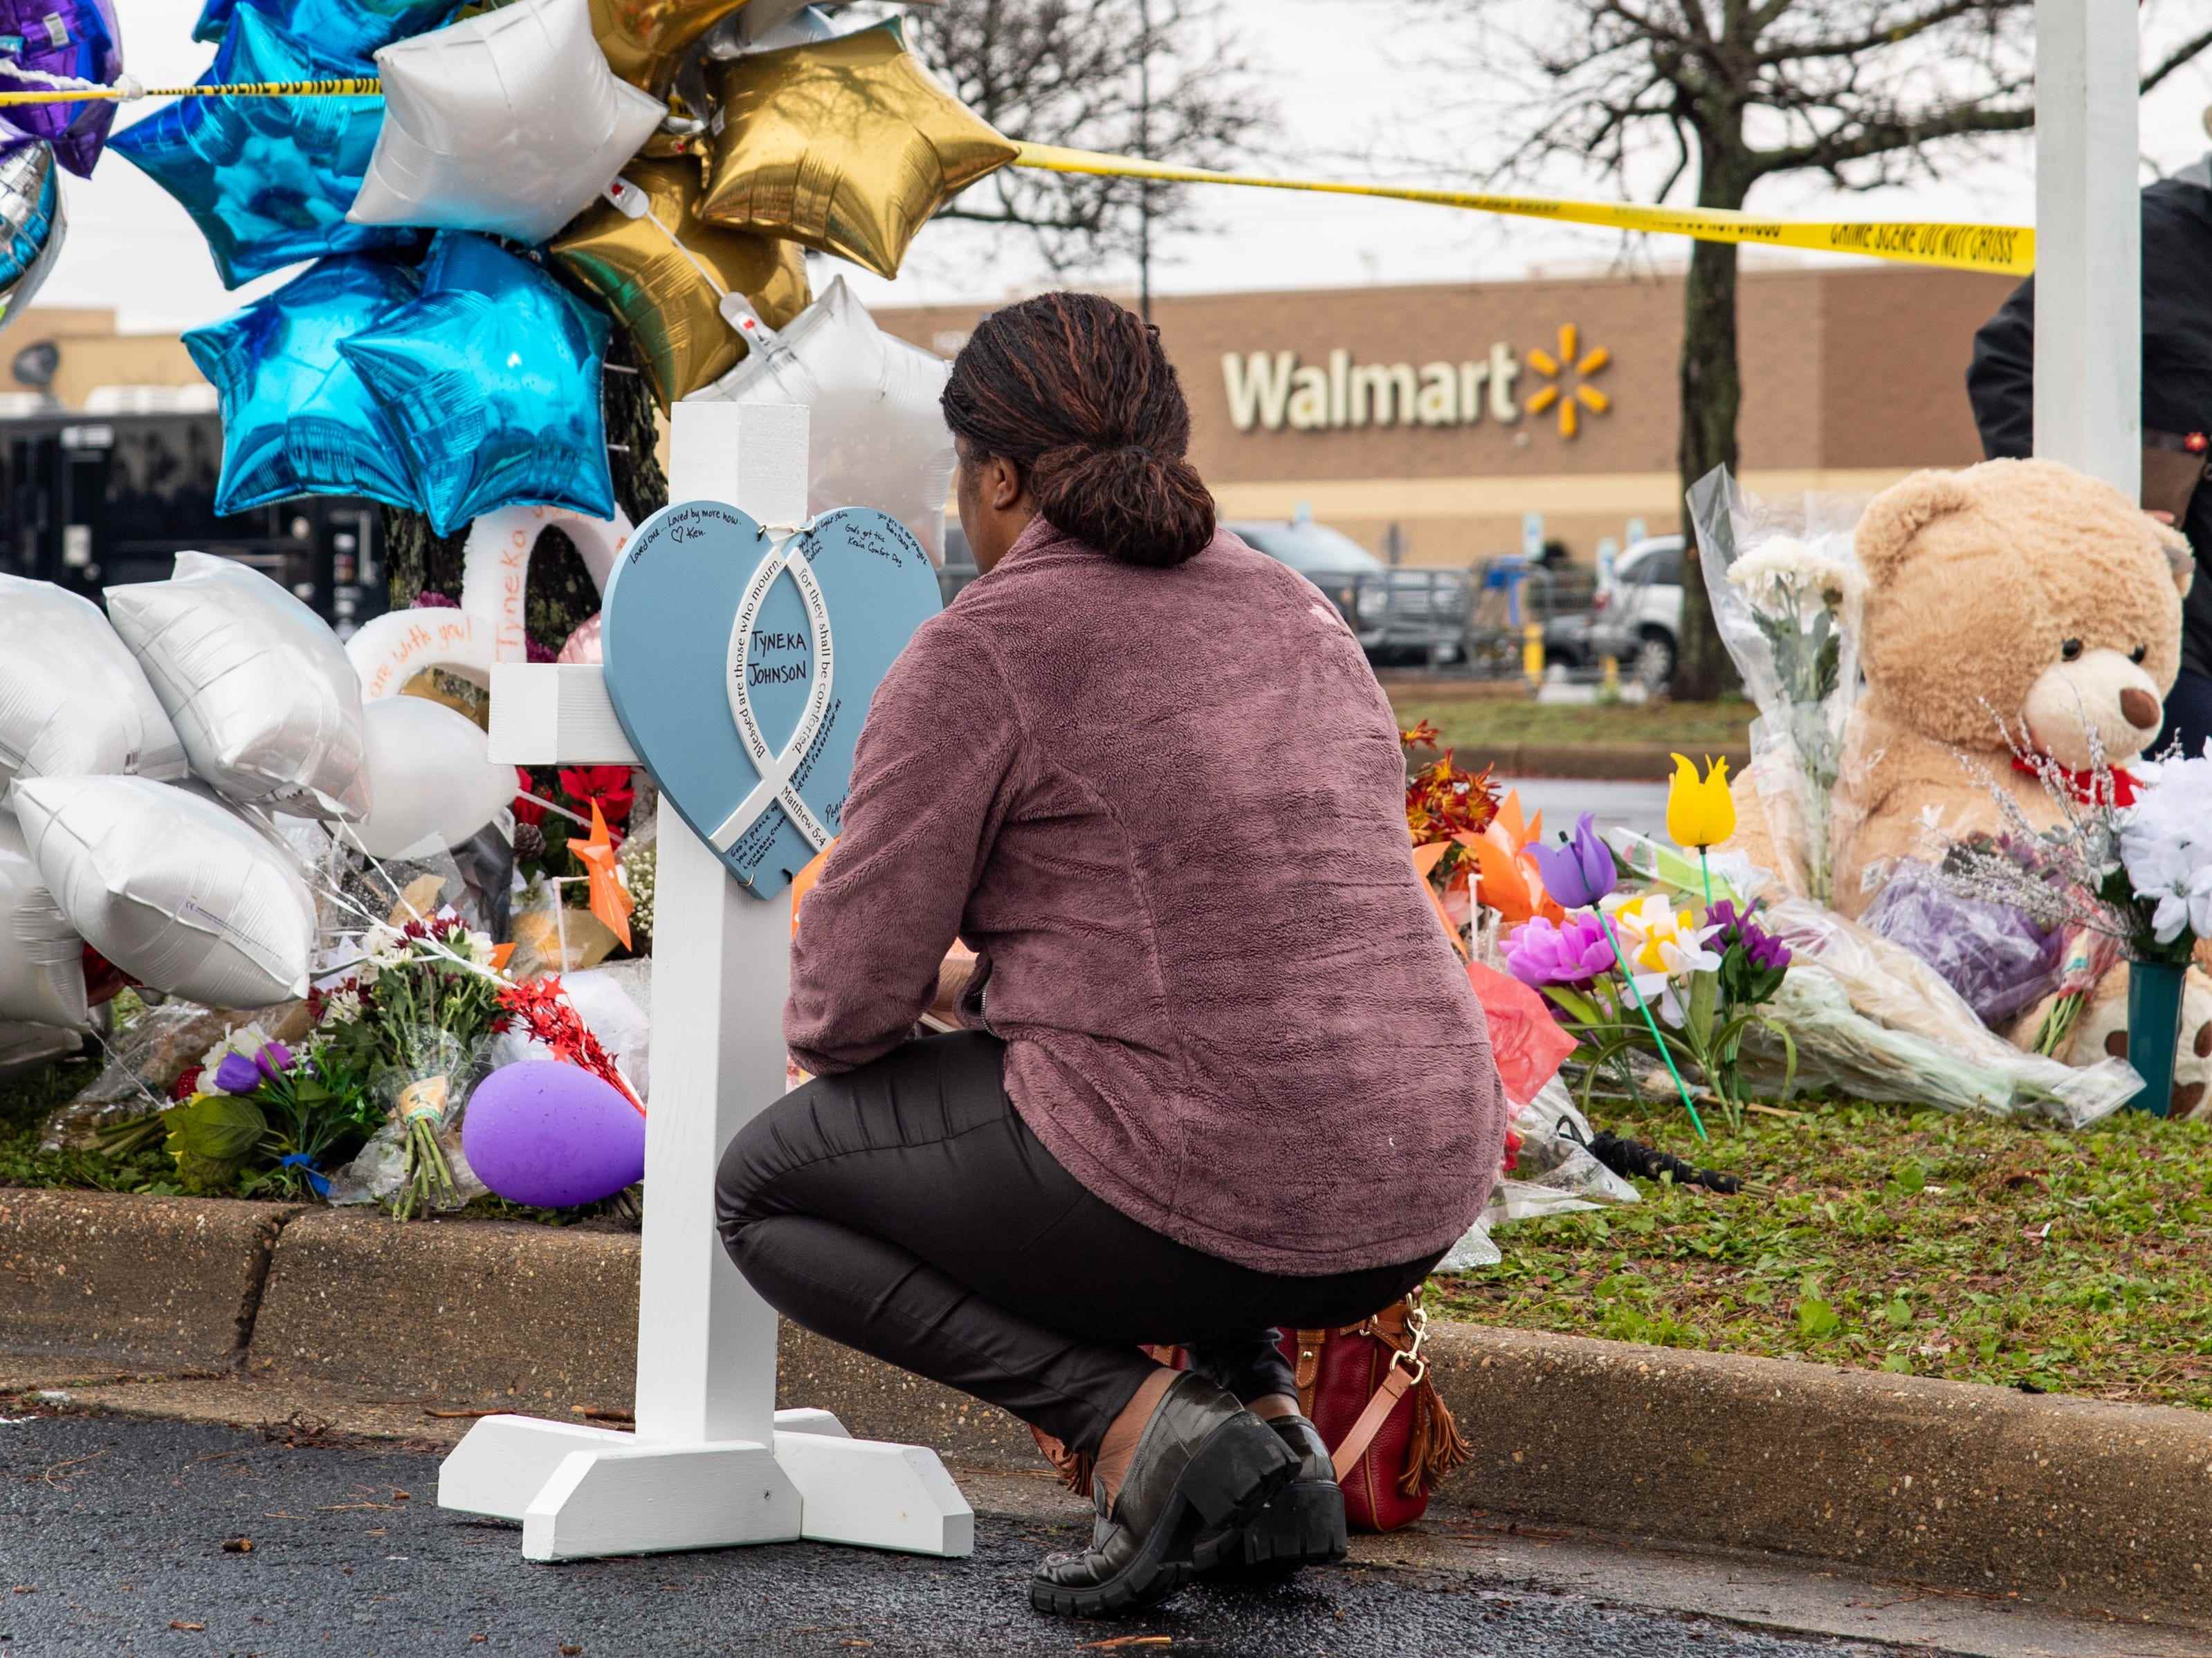 Chesapeake Walmart erschießt Trauernde